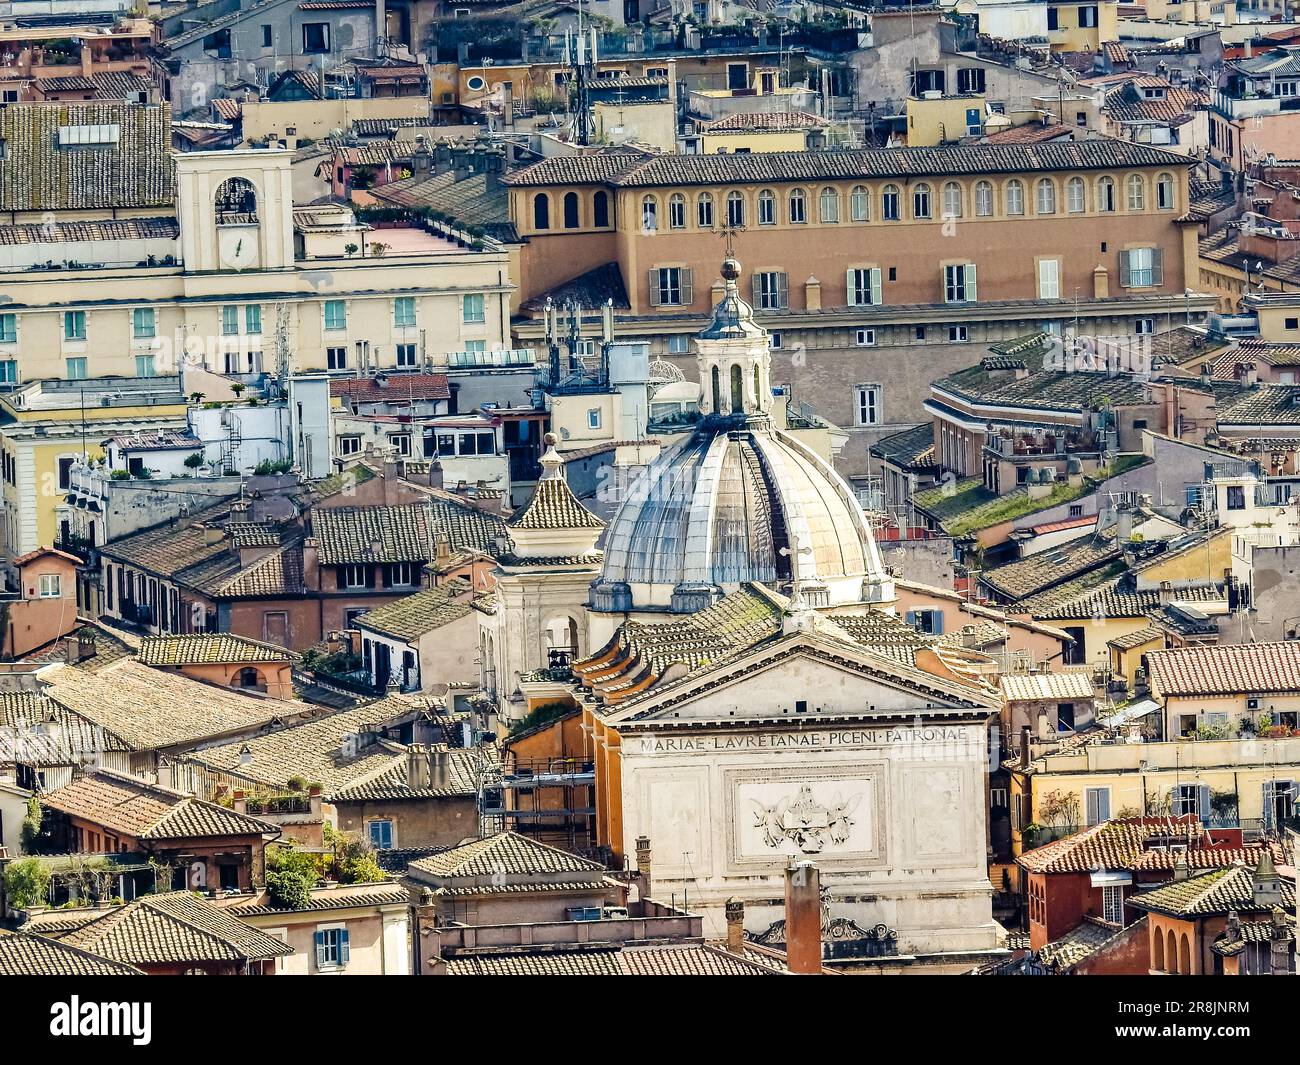 Une vue panoramique de Rome, avec les bâtiments, les toits et les dômes des églises catholiques depuis un point de vue élevé Banque D'Images